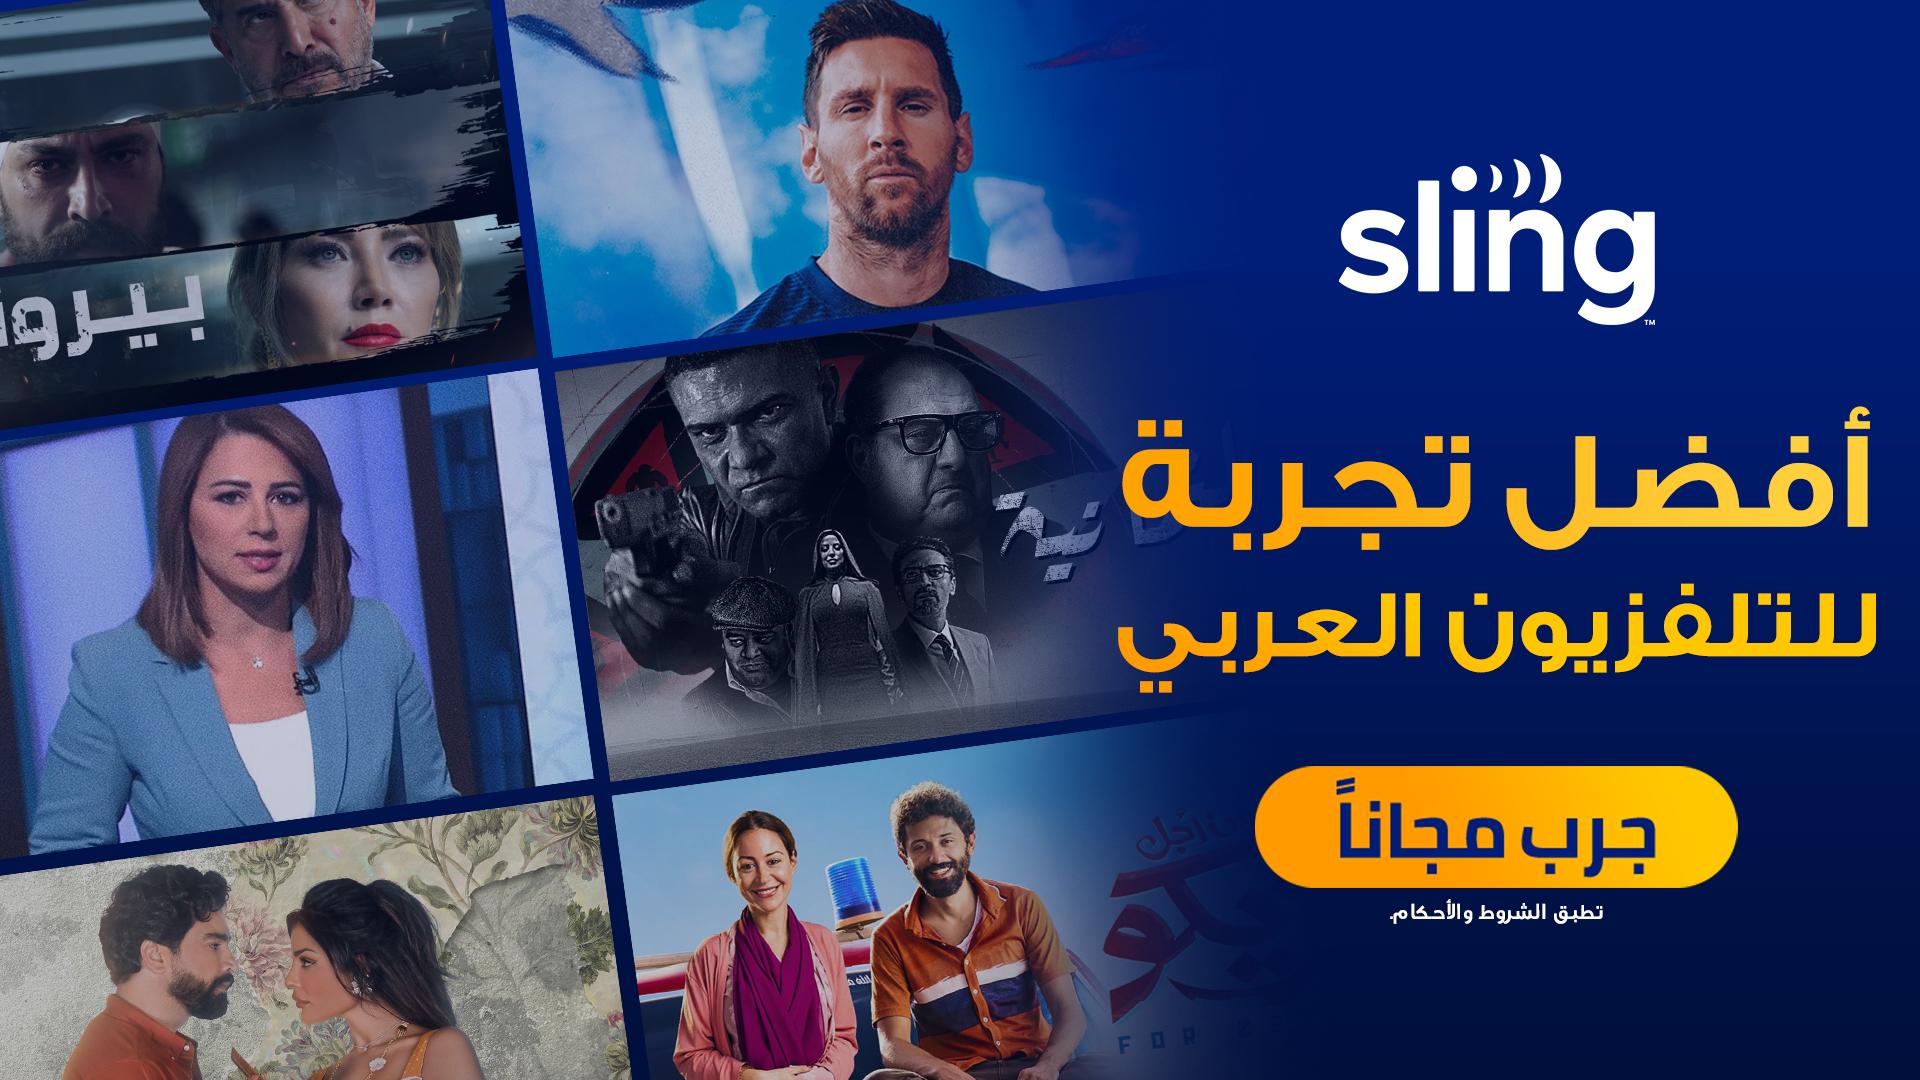 الجزيرة تعيد إطلاق خدمة البث المباشر العربية “Sling” للجمهور الأمريكي